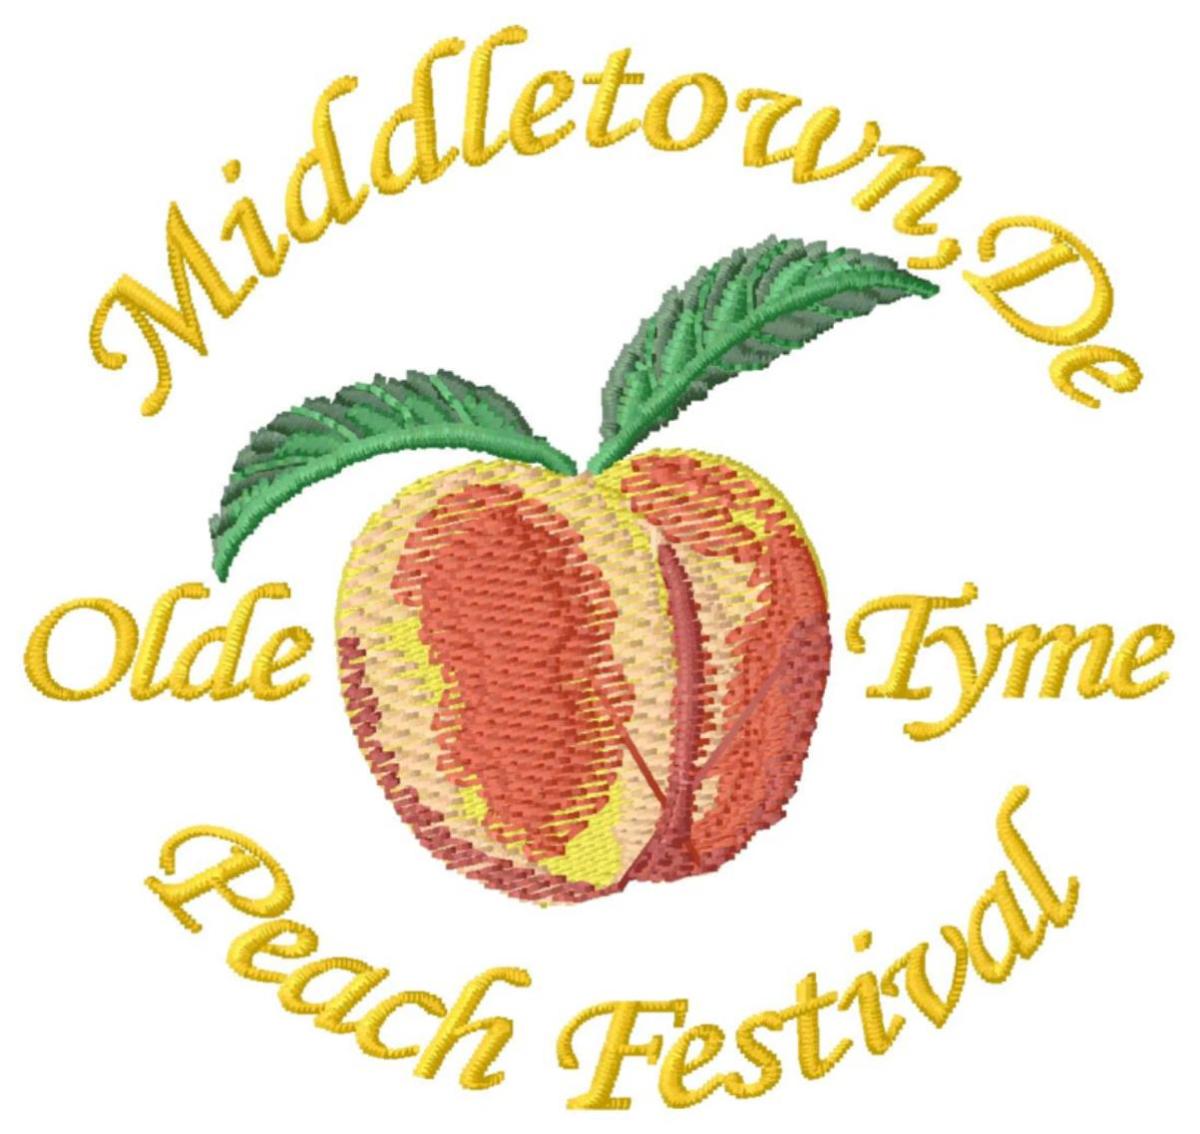 Middletown Olde Tyme Peach Festival Middletown De 19709